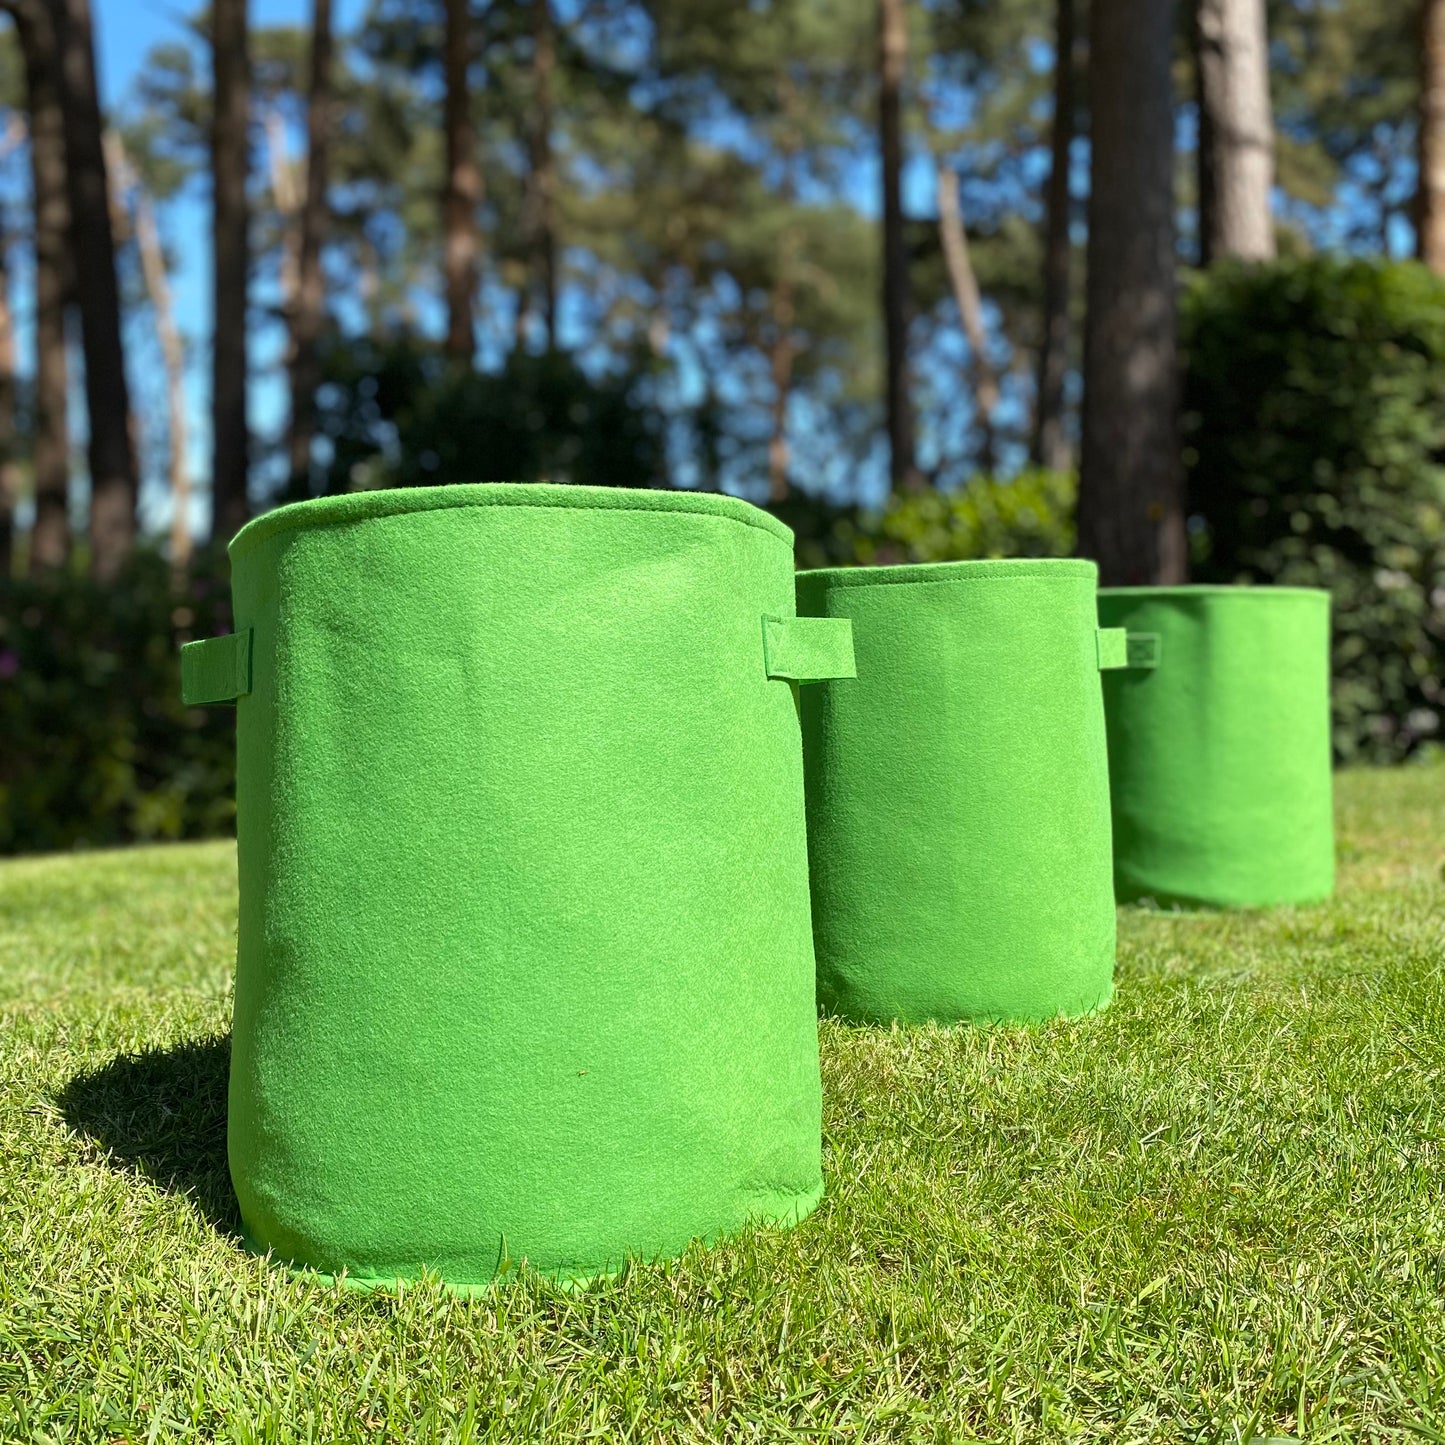 Potato & Vegetable Planter Grow Bags (Set of 6) Non Woven Aeration Fabric Pots